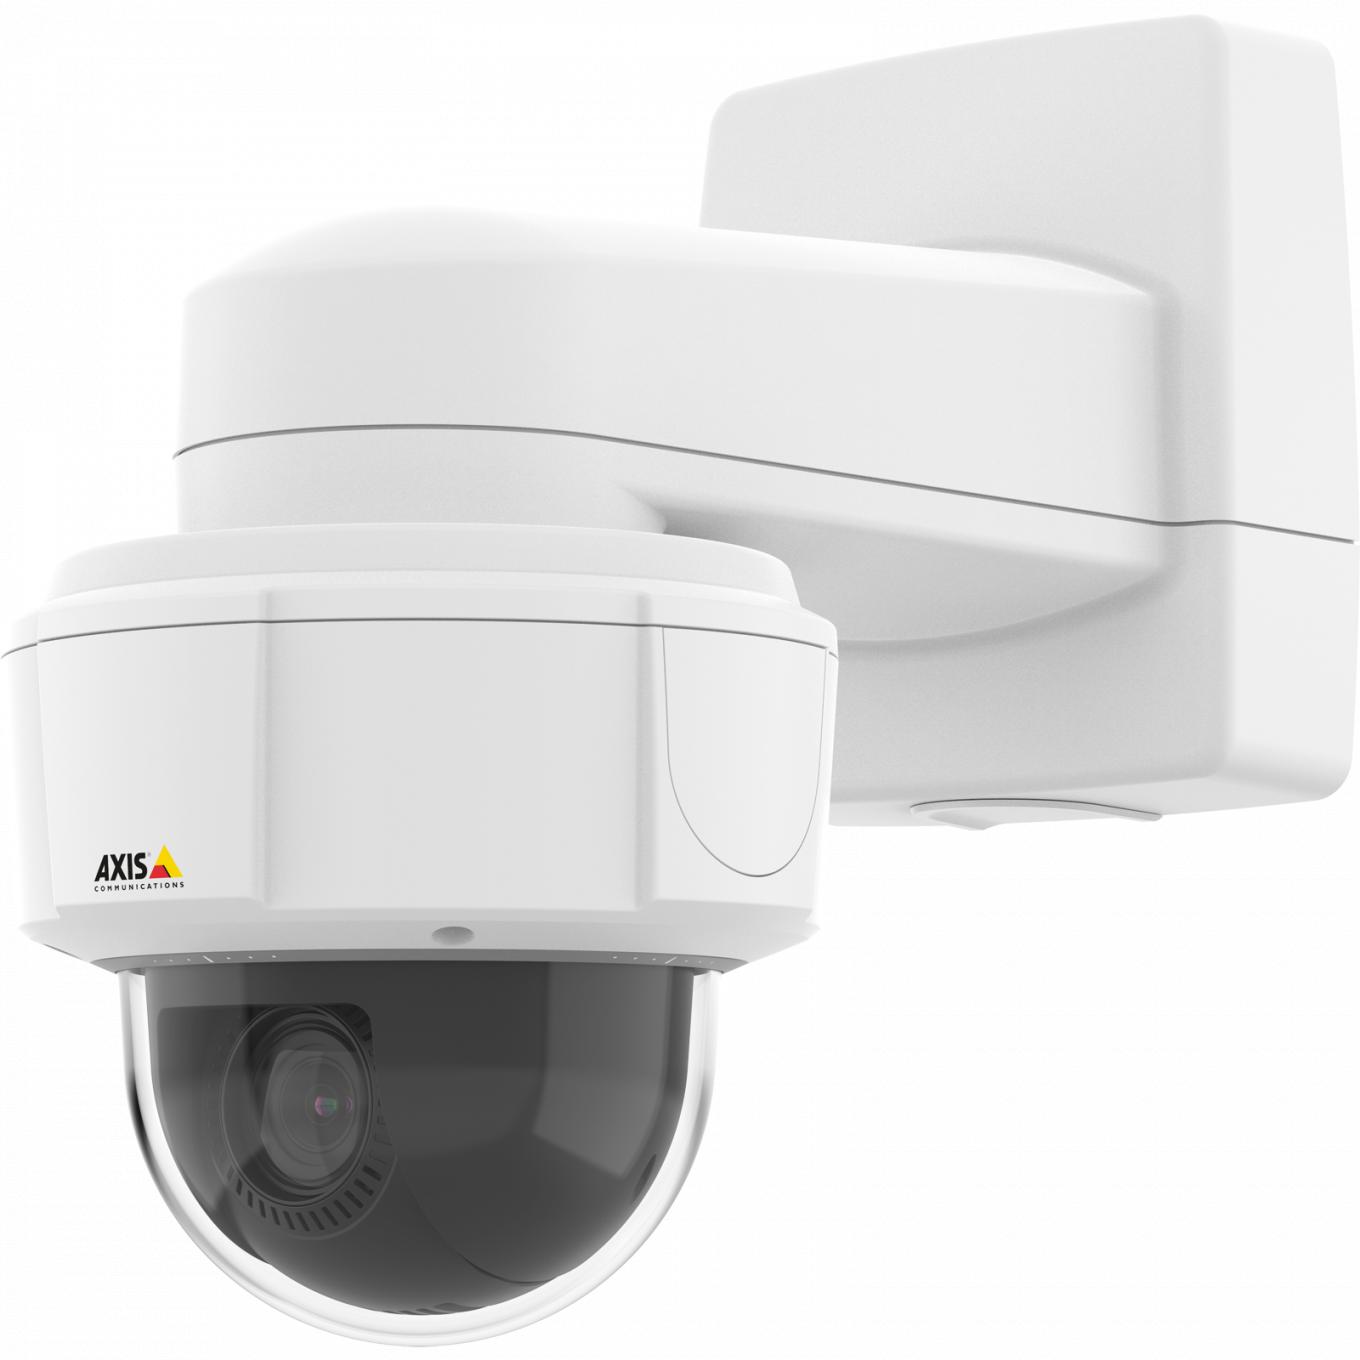  La cámara IP M5525-E de Axis tiene movimiento horizontal continuo de 360° y Axis Zipstream